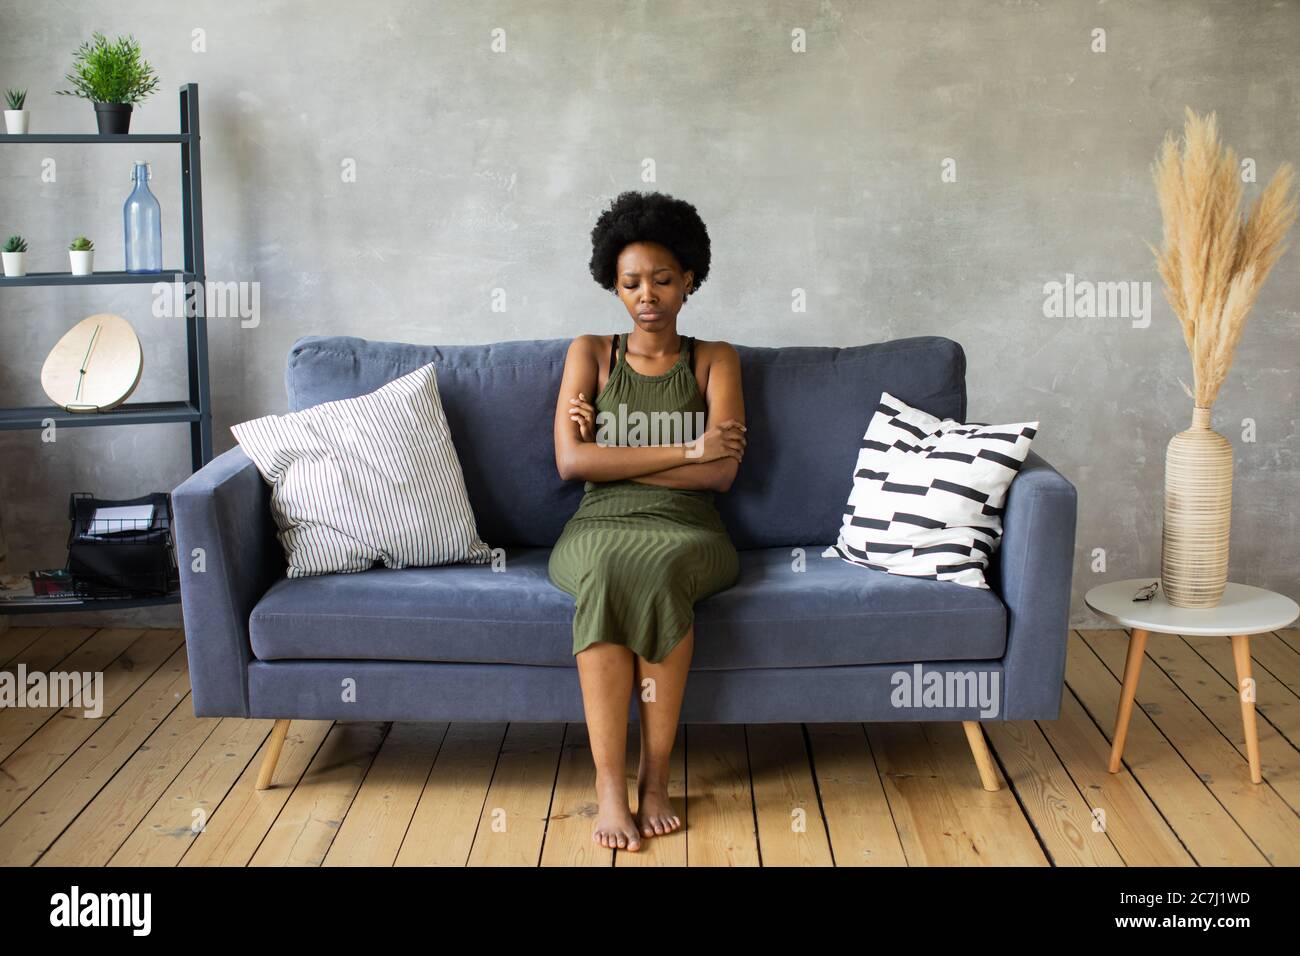 Infelice donna afroamericana siediti sul divano, la ragazza è molto turbata seduta sul divano del suo appartamento. Foto Stock